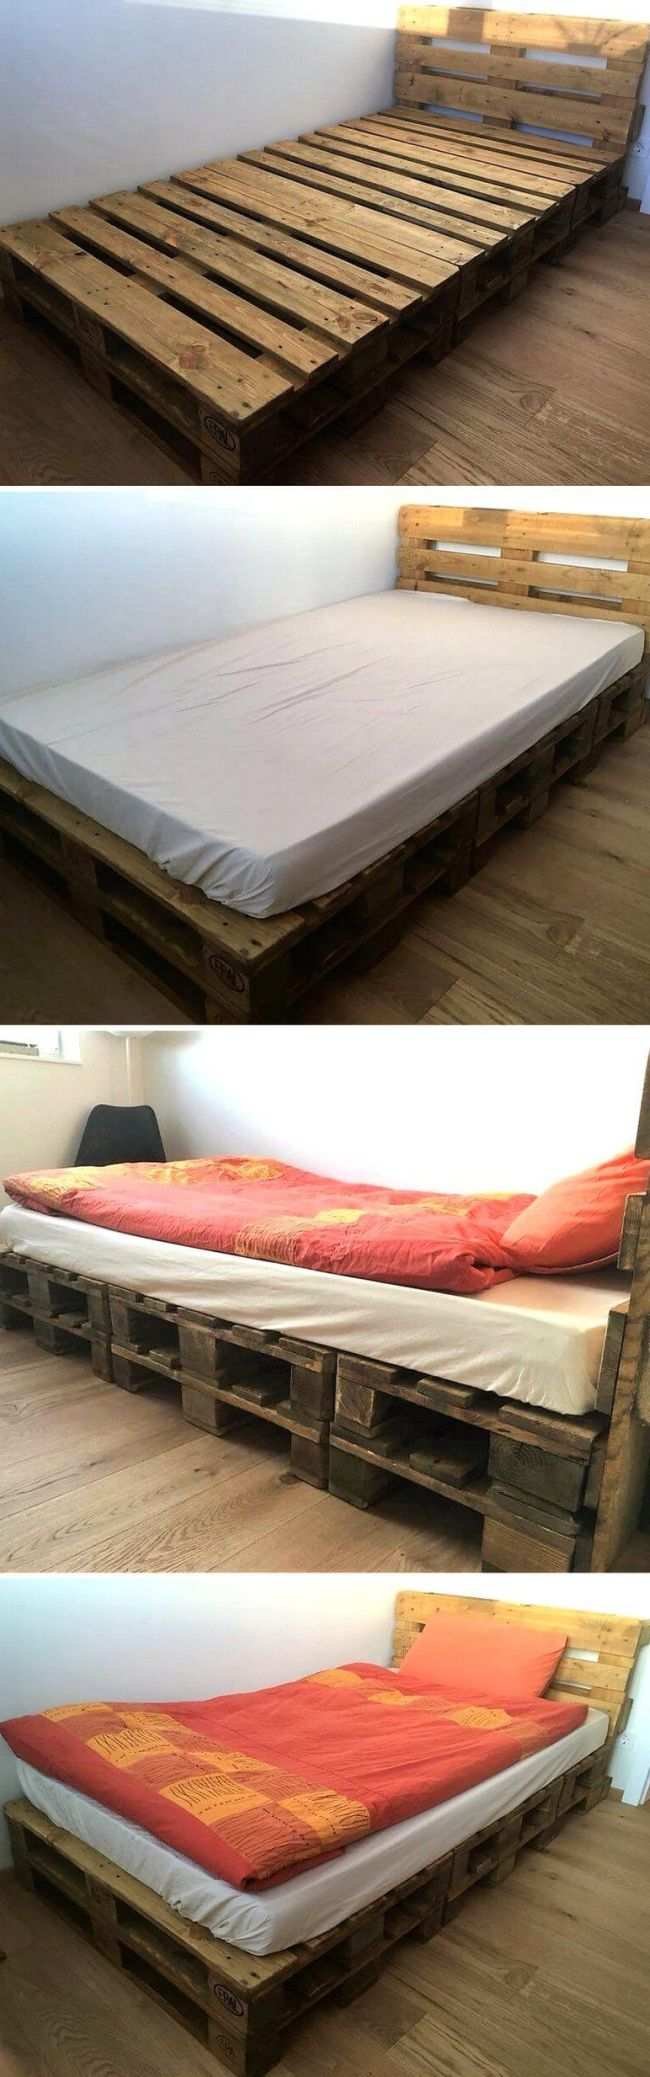 cama solteiro